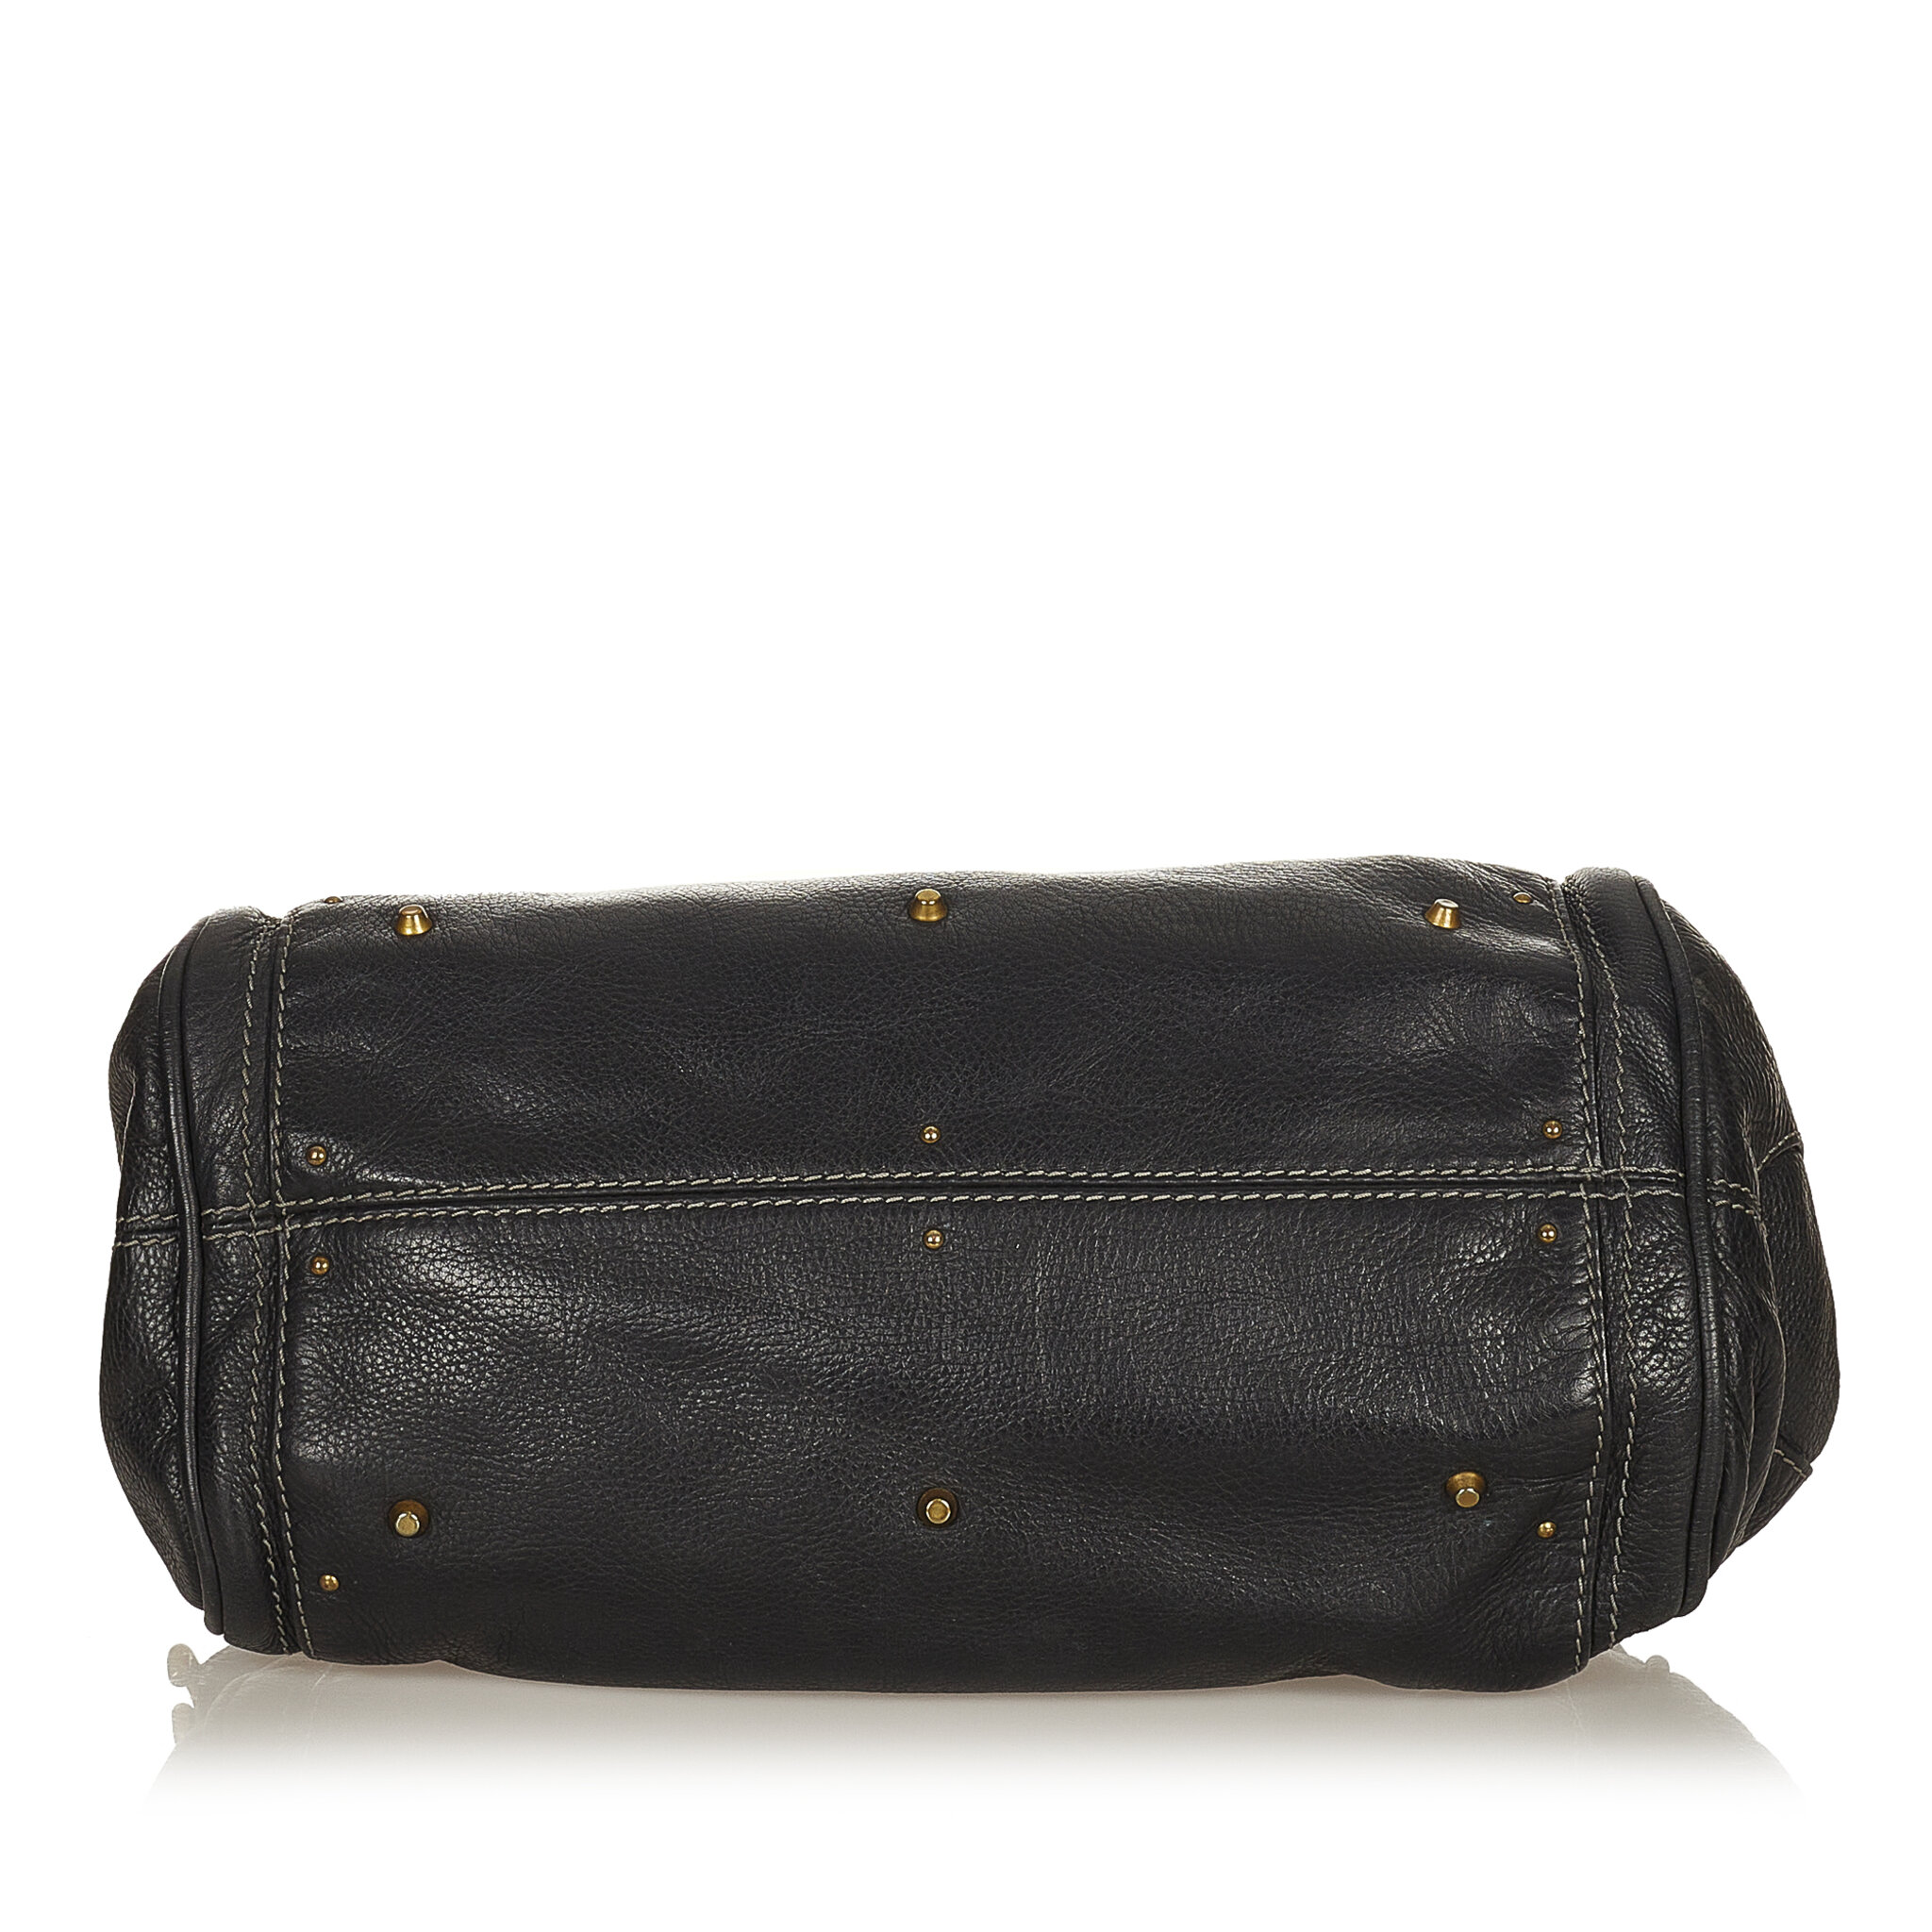 Chloe Paddington Leather Handbag, ONESIZE, black